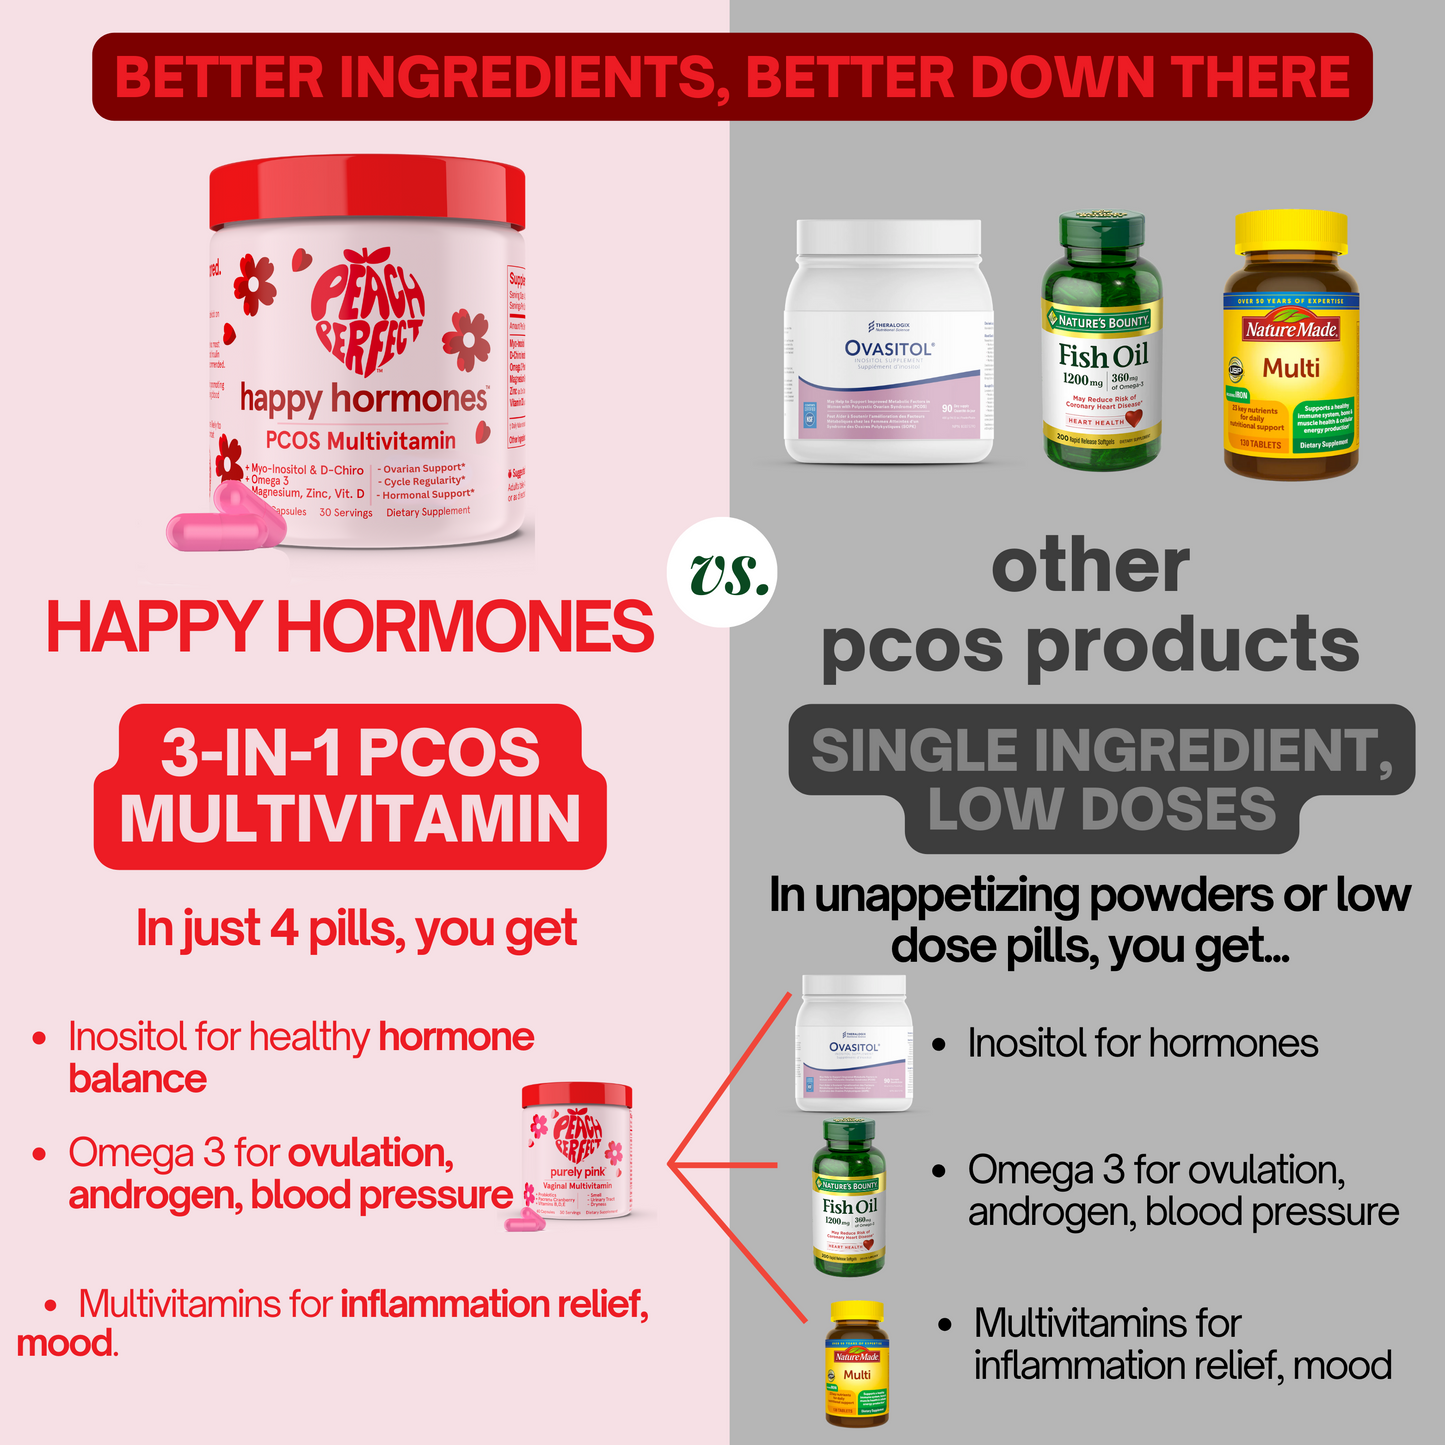 Happy Hormones PCOS Multivitamin